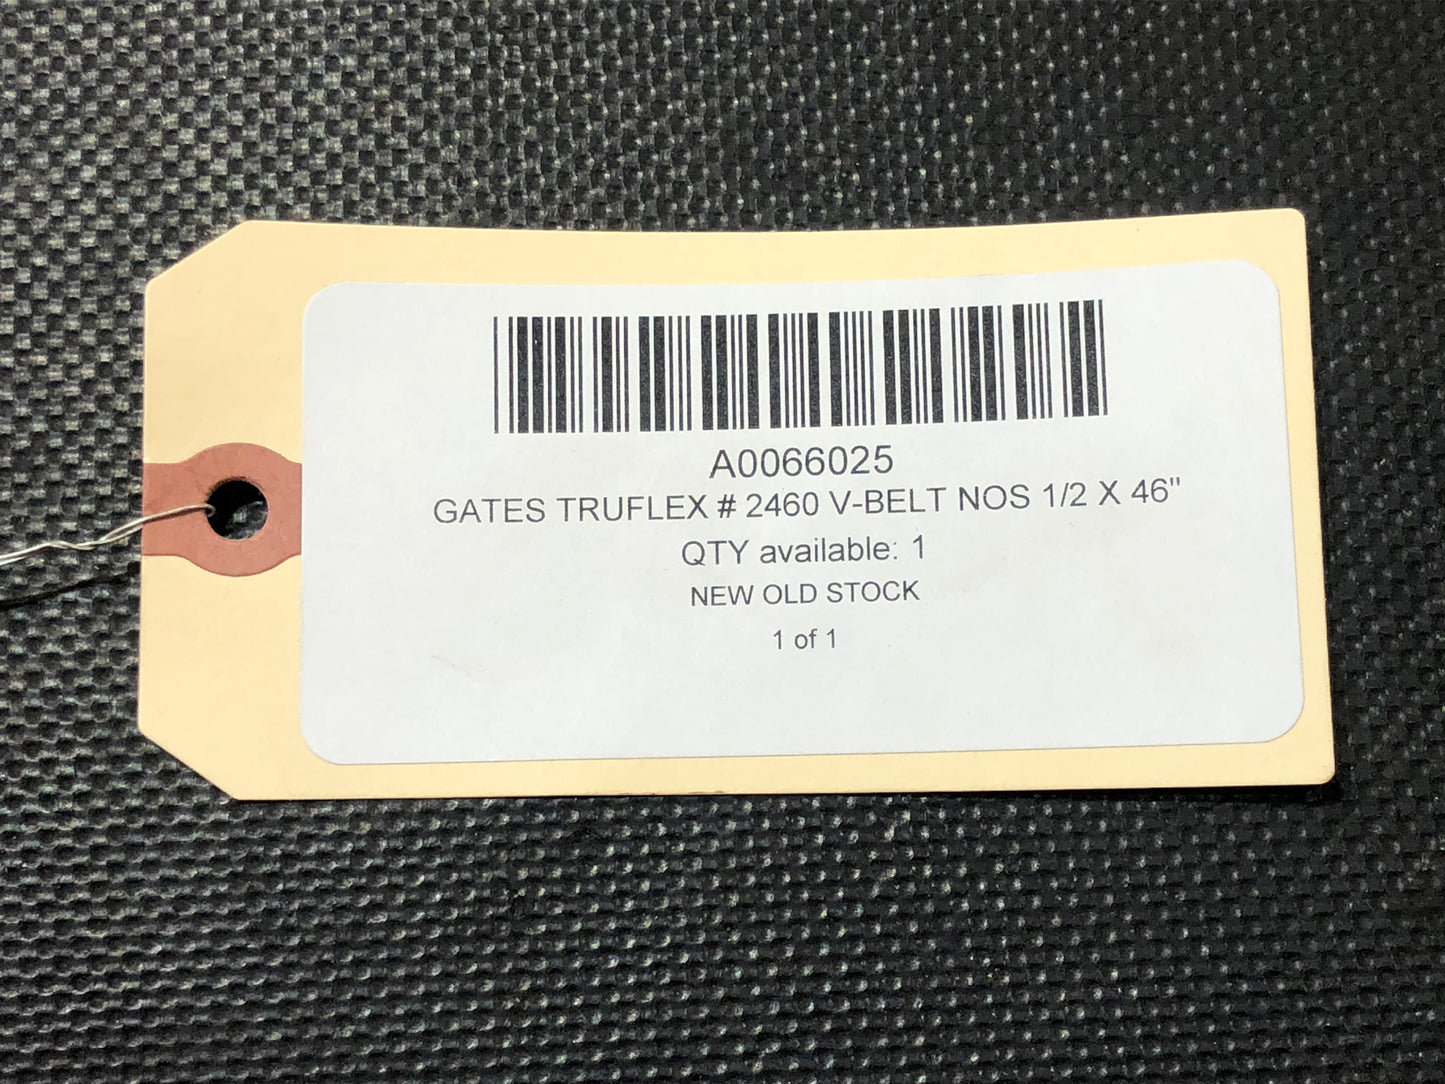 Gates Truflex # 2460 V-Belt NOS 1/2 X 46"